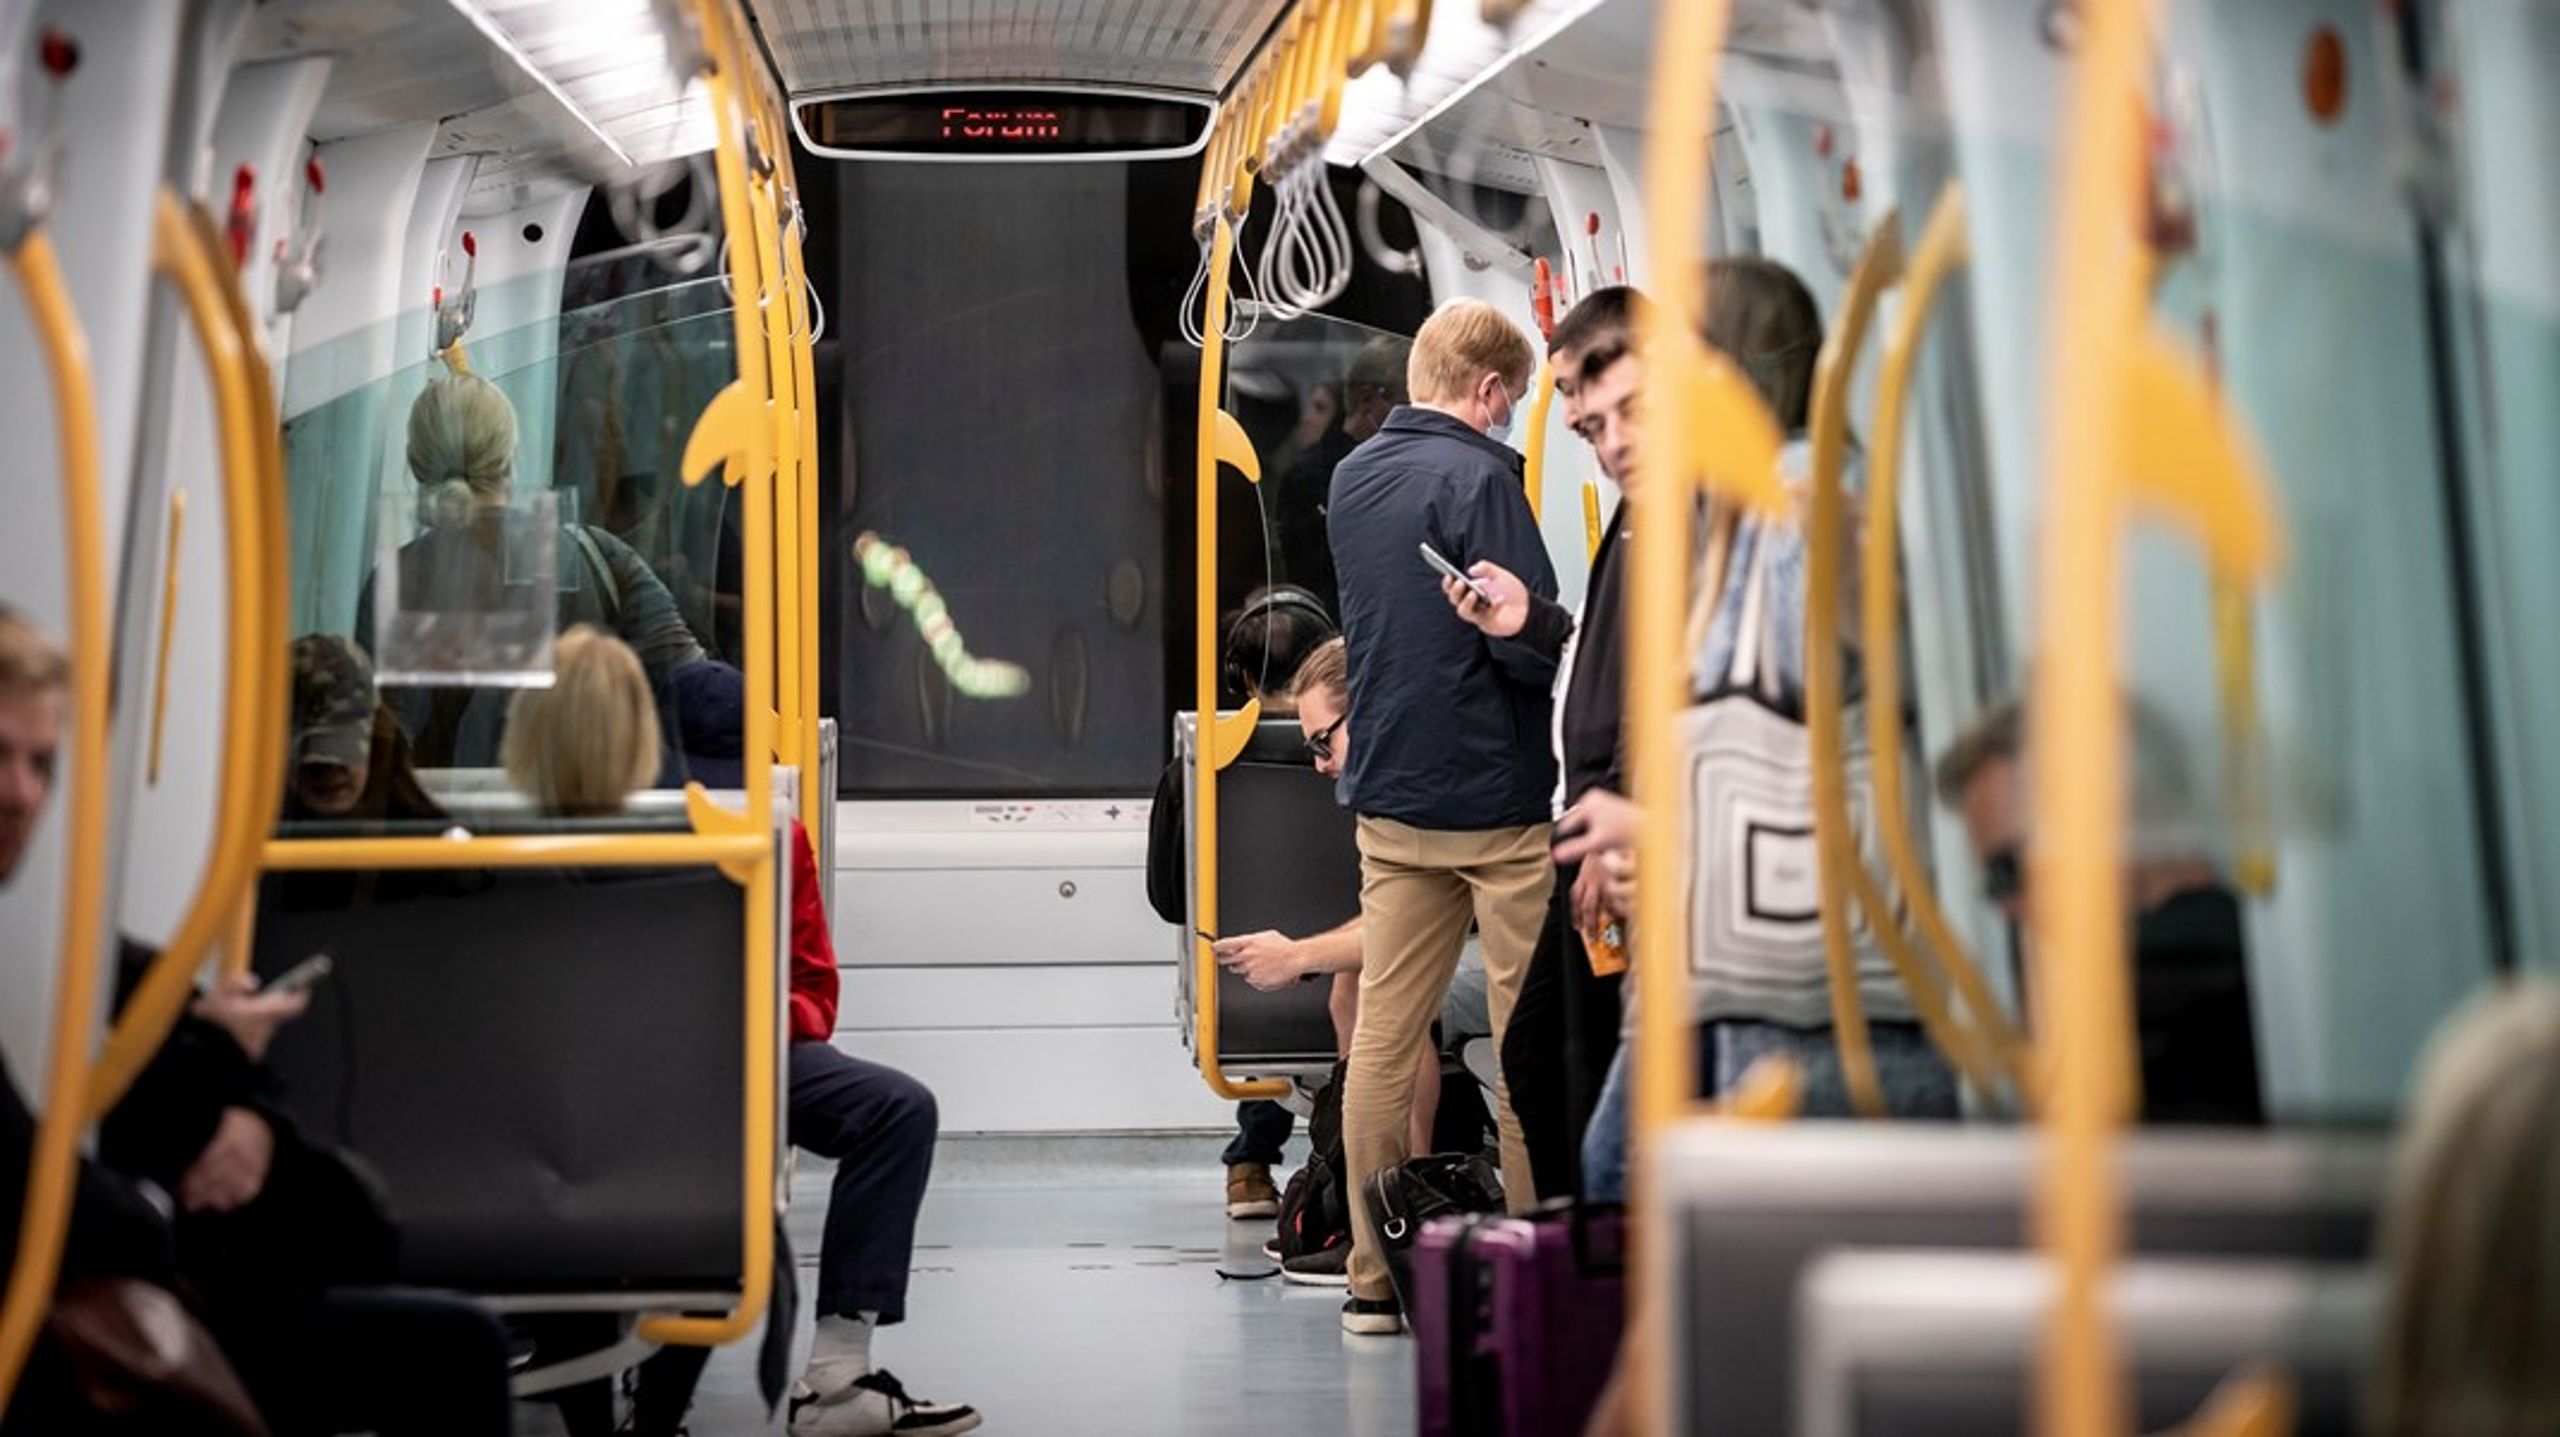 I København er informationer om offentlig transport fordelt på selskaber på tværs af transportformer som bus og metro. Men i fremtiden skal er oprettes en fælles organisation, der samler den offentlige transport, skriver&nbsp;Martin
Geertsen og Kristian Pihl Lorentzen.